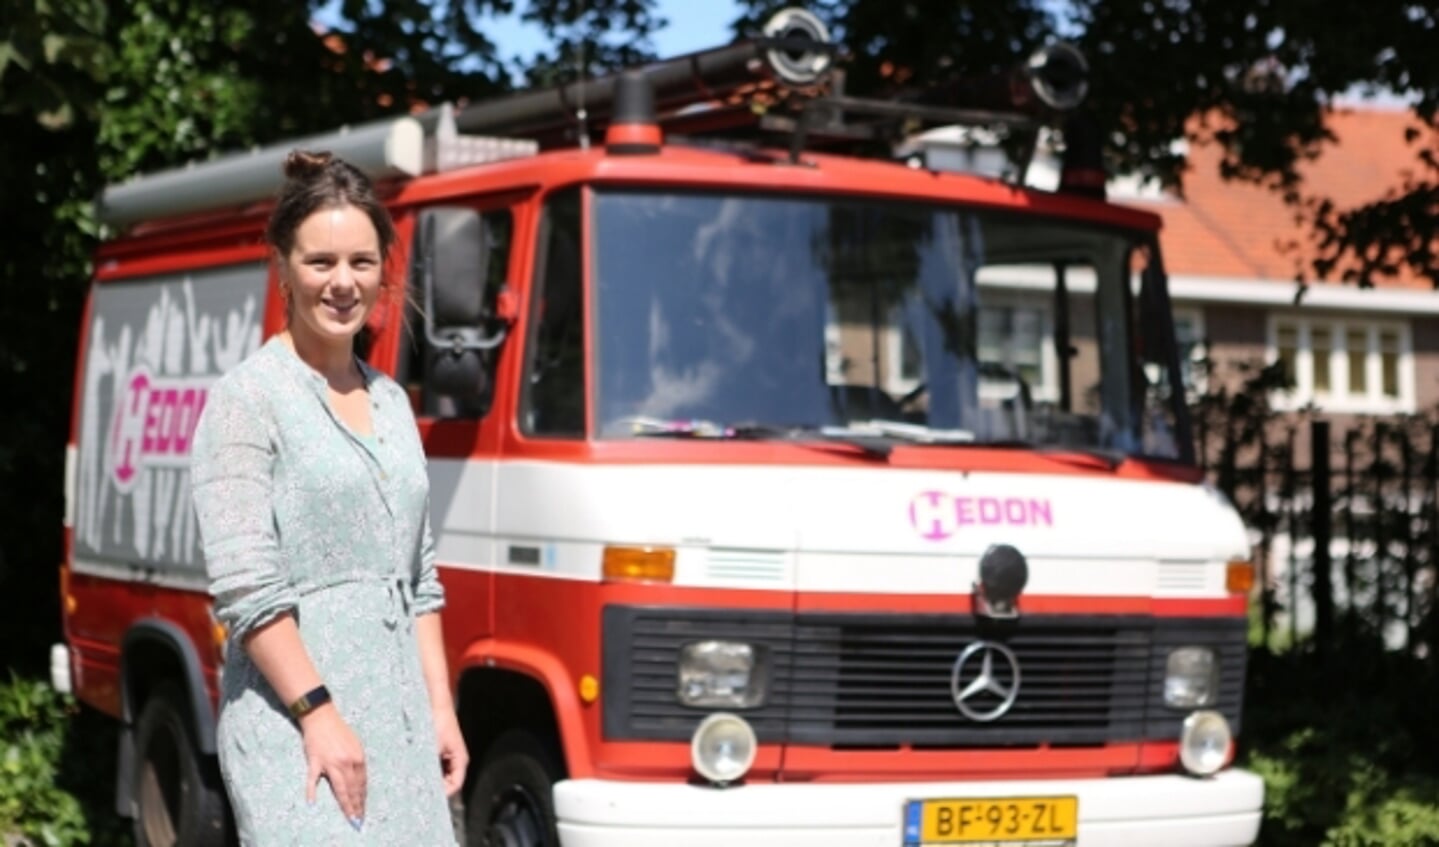 Simone Boshove bij de brandweerwagen van Hedon.